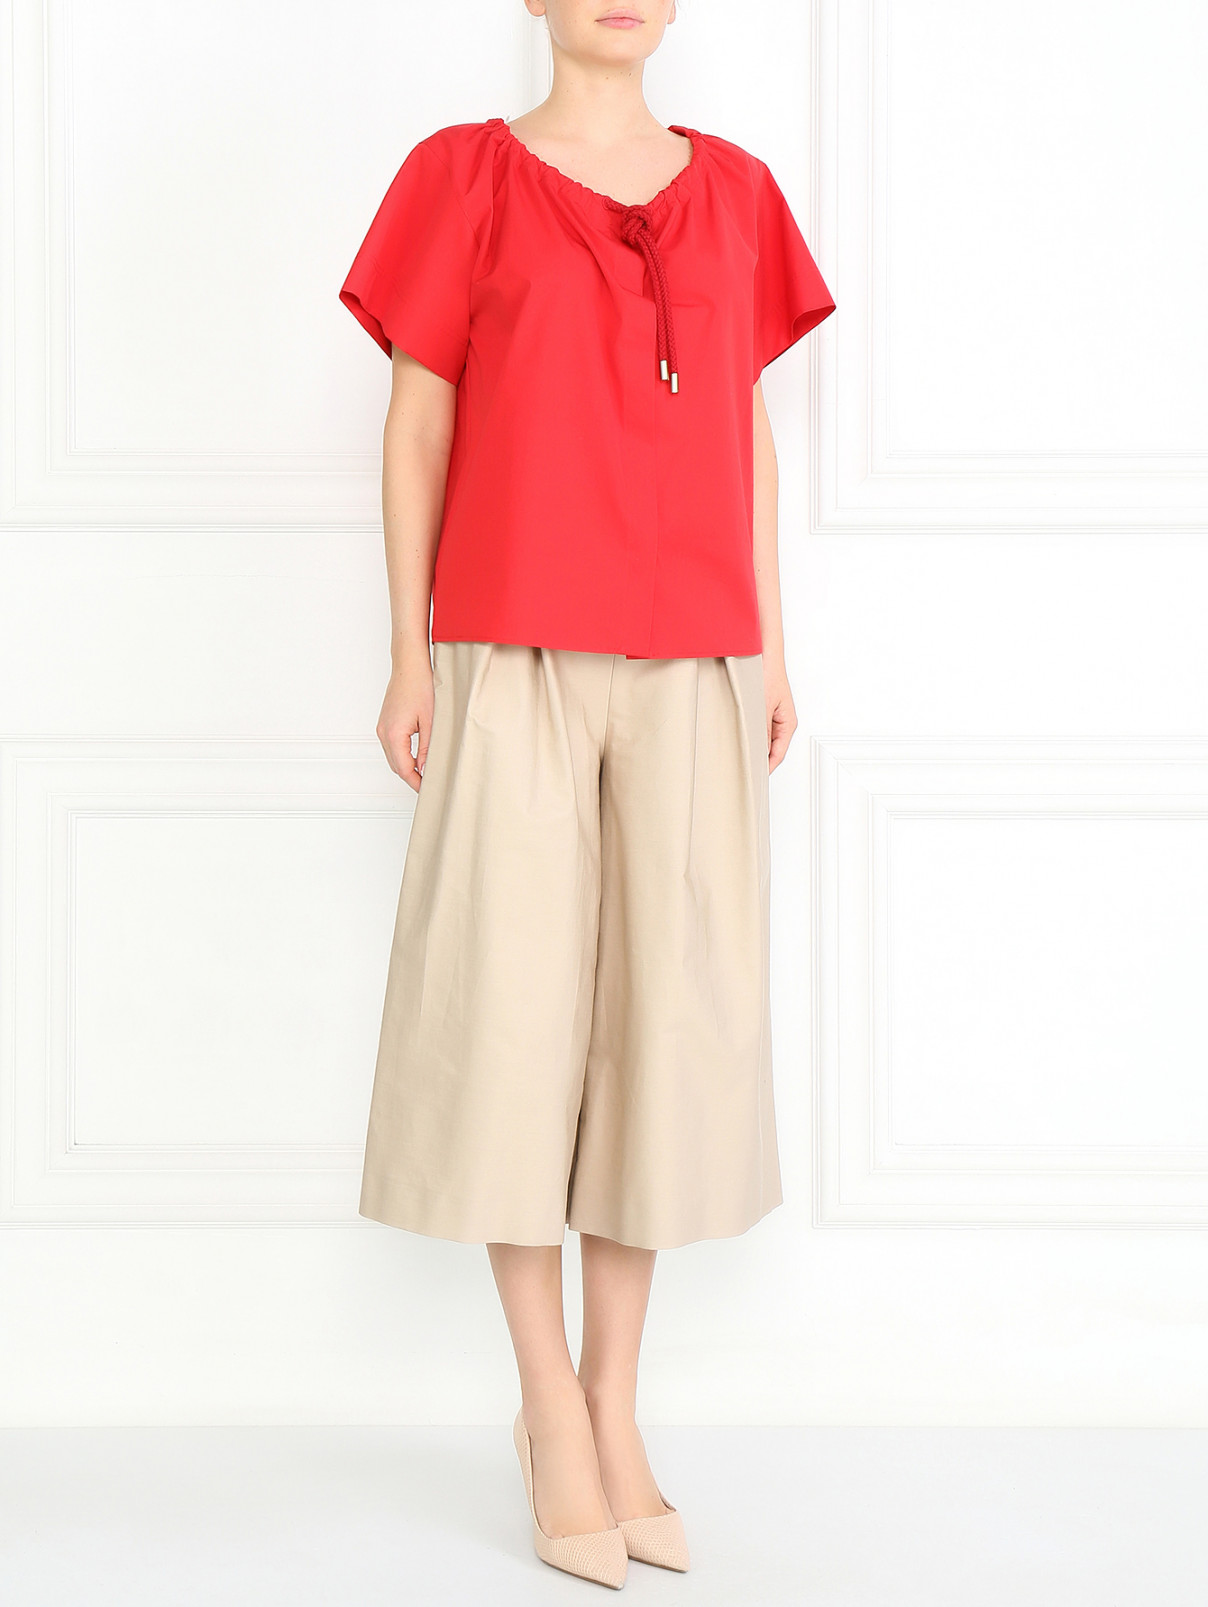 Блуза из хлопка Max Mara  –  Модель Общий вид  – Цвет:  Красный